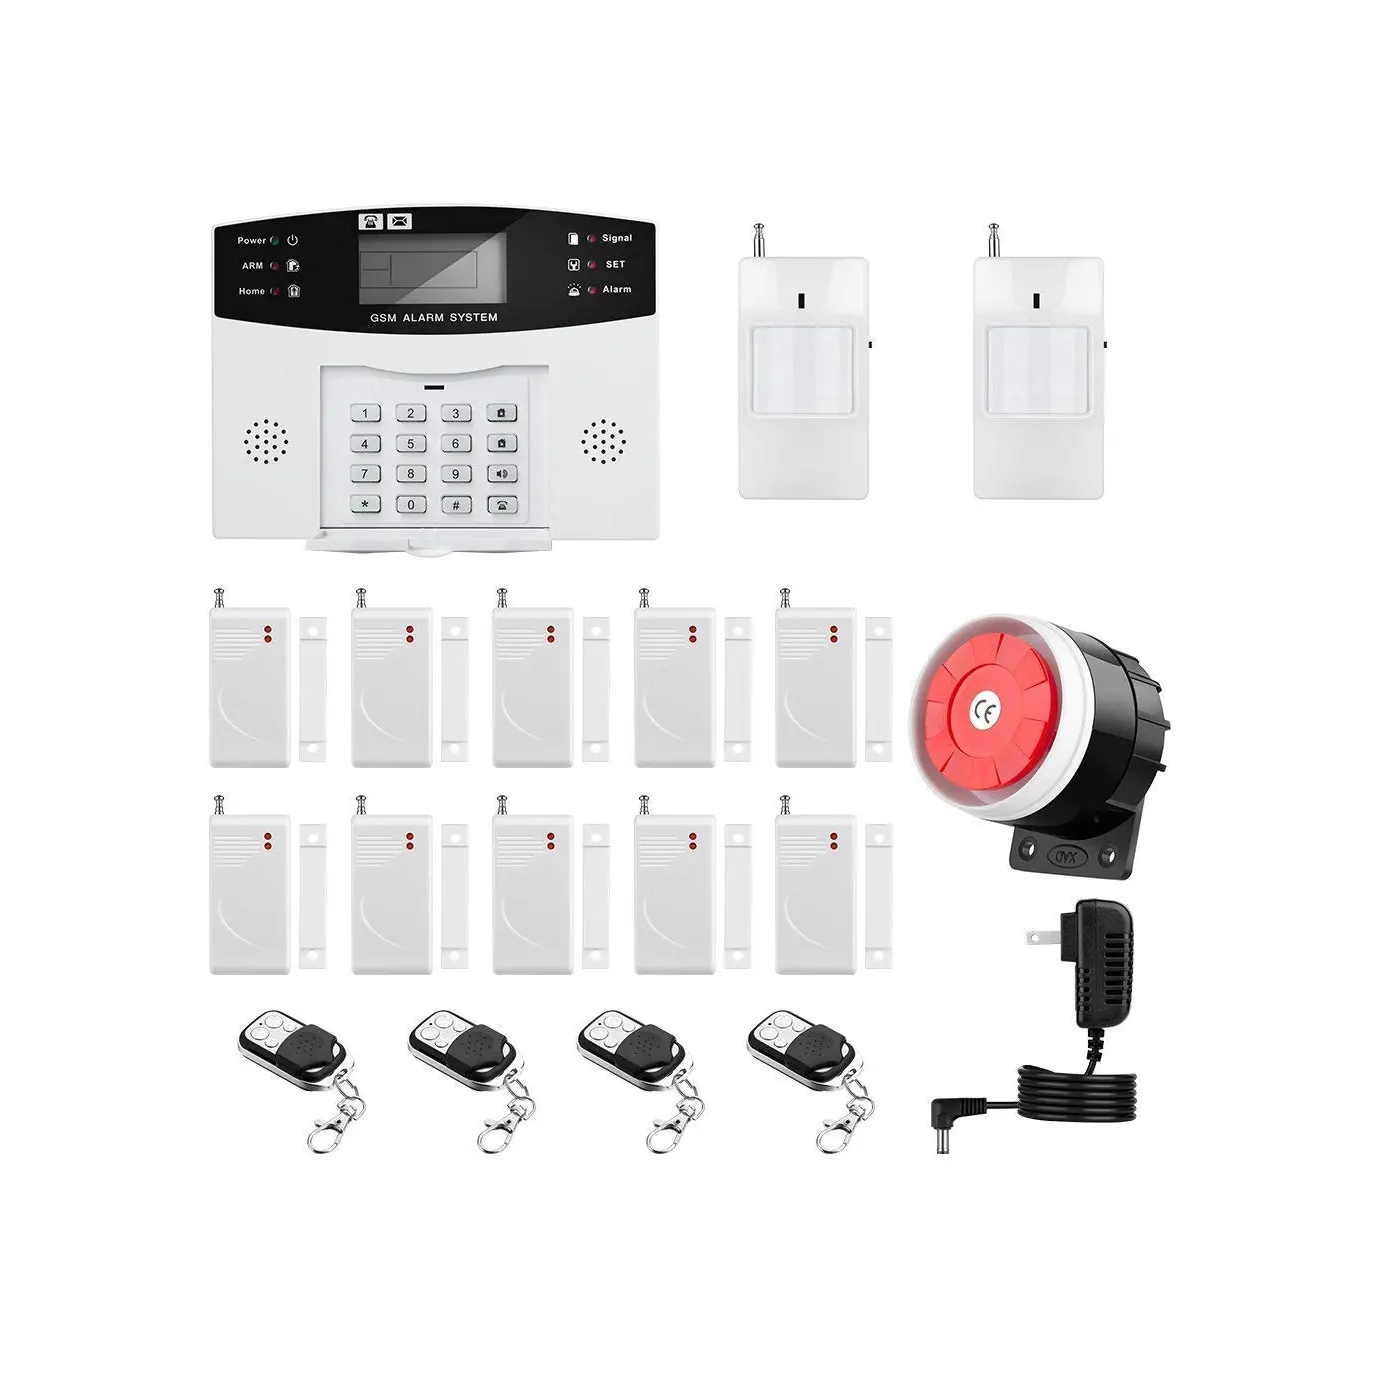 Комплект домашней охранной сигнализации с автодозвоном 120 дБ, сирена с дистанционным управлением, интеллектуальная система сигнализации для умного дома, Беспроводная GSM система безопасности